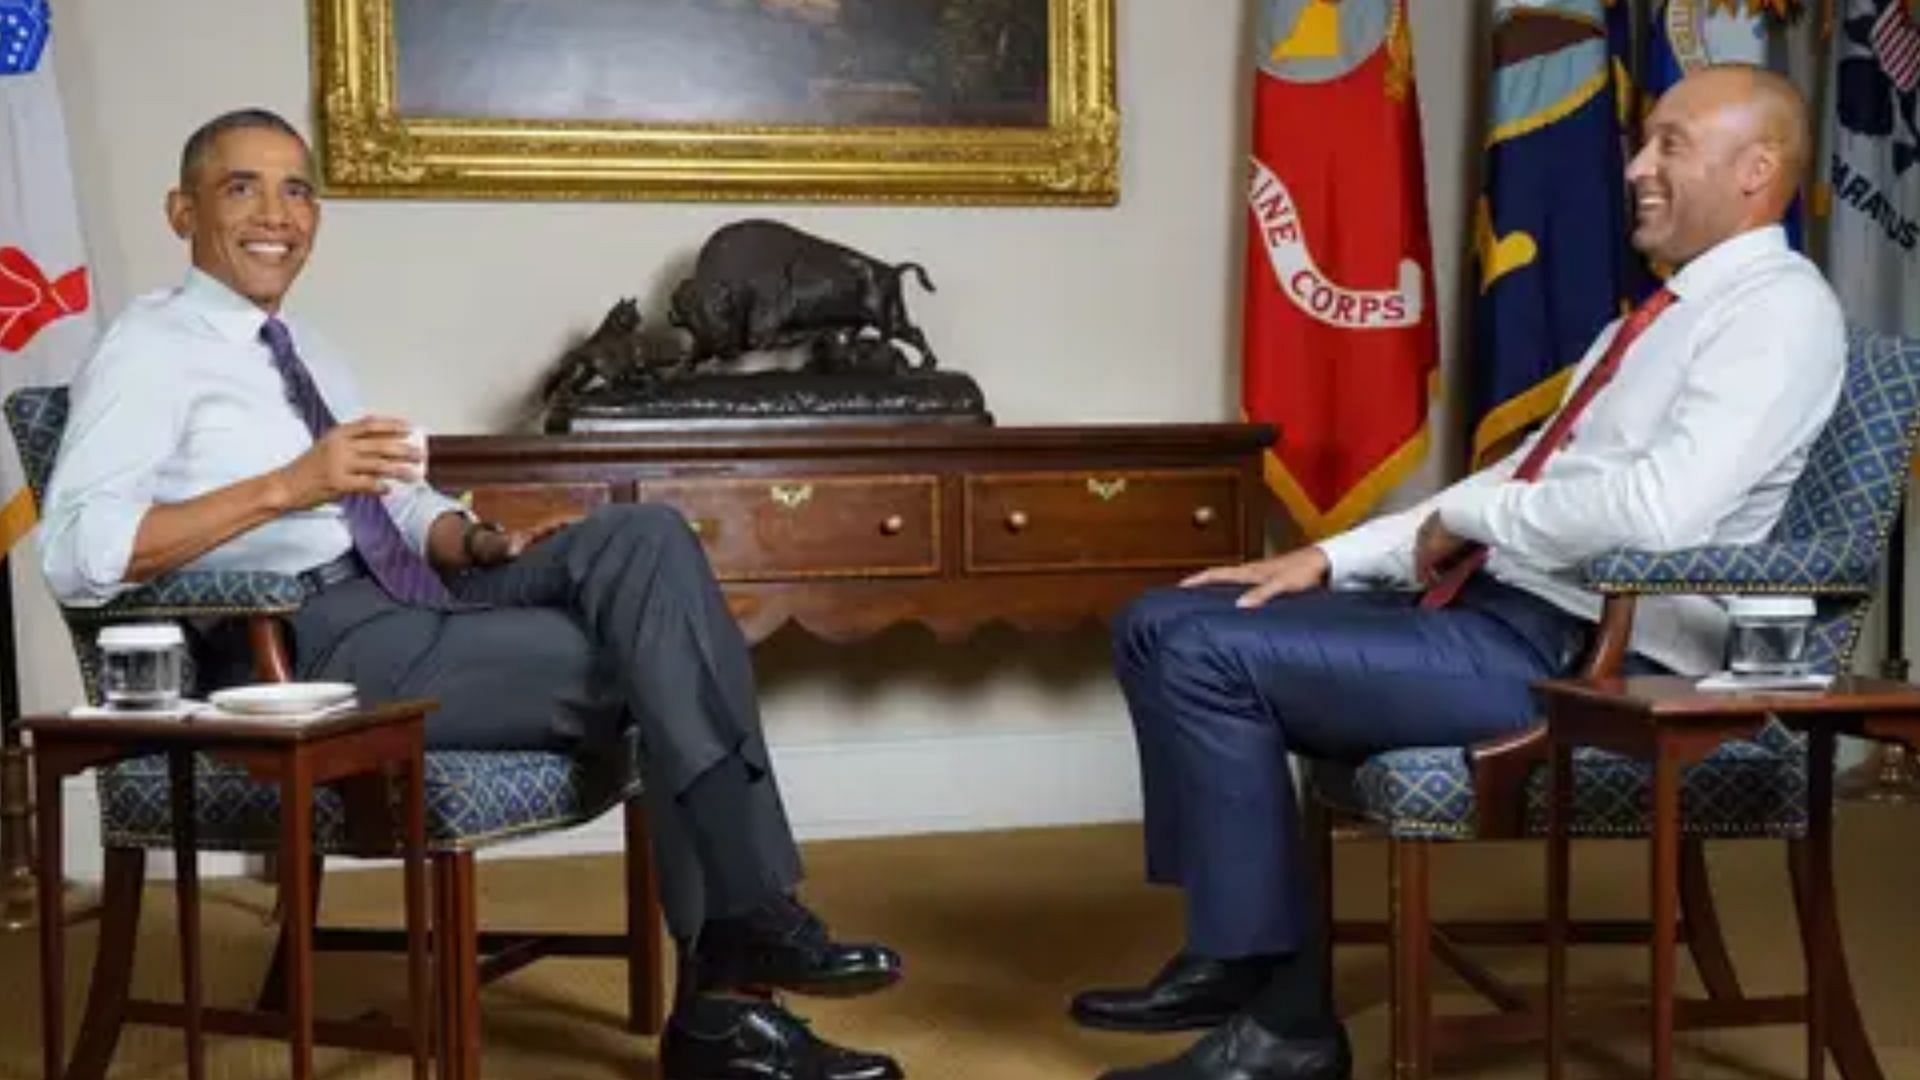 Derek Jeter and former President Barack Obama at the White House. 